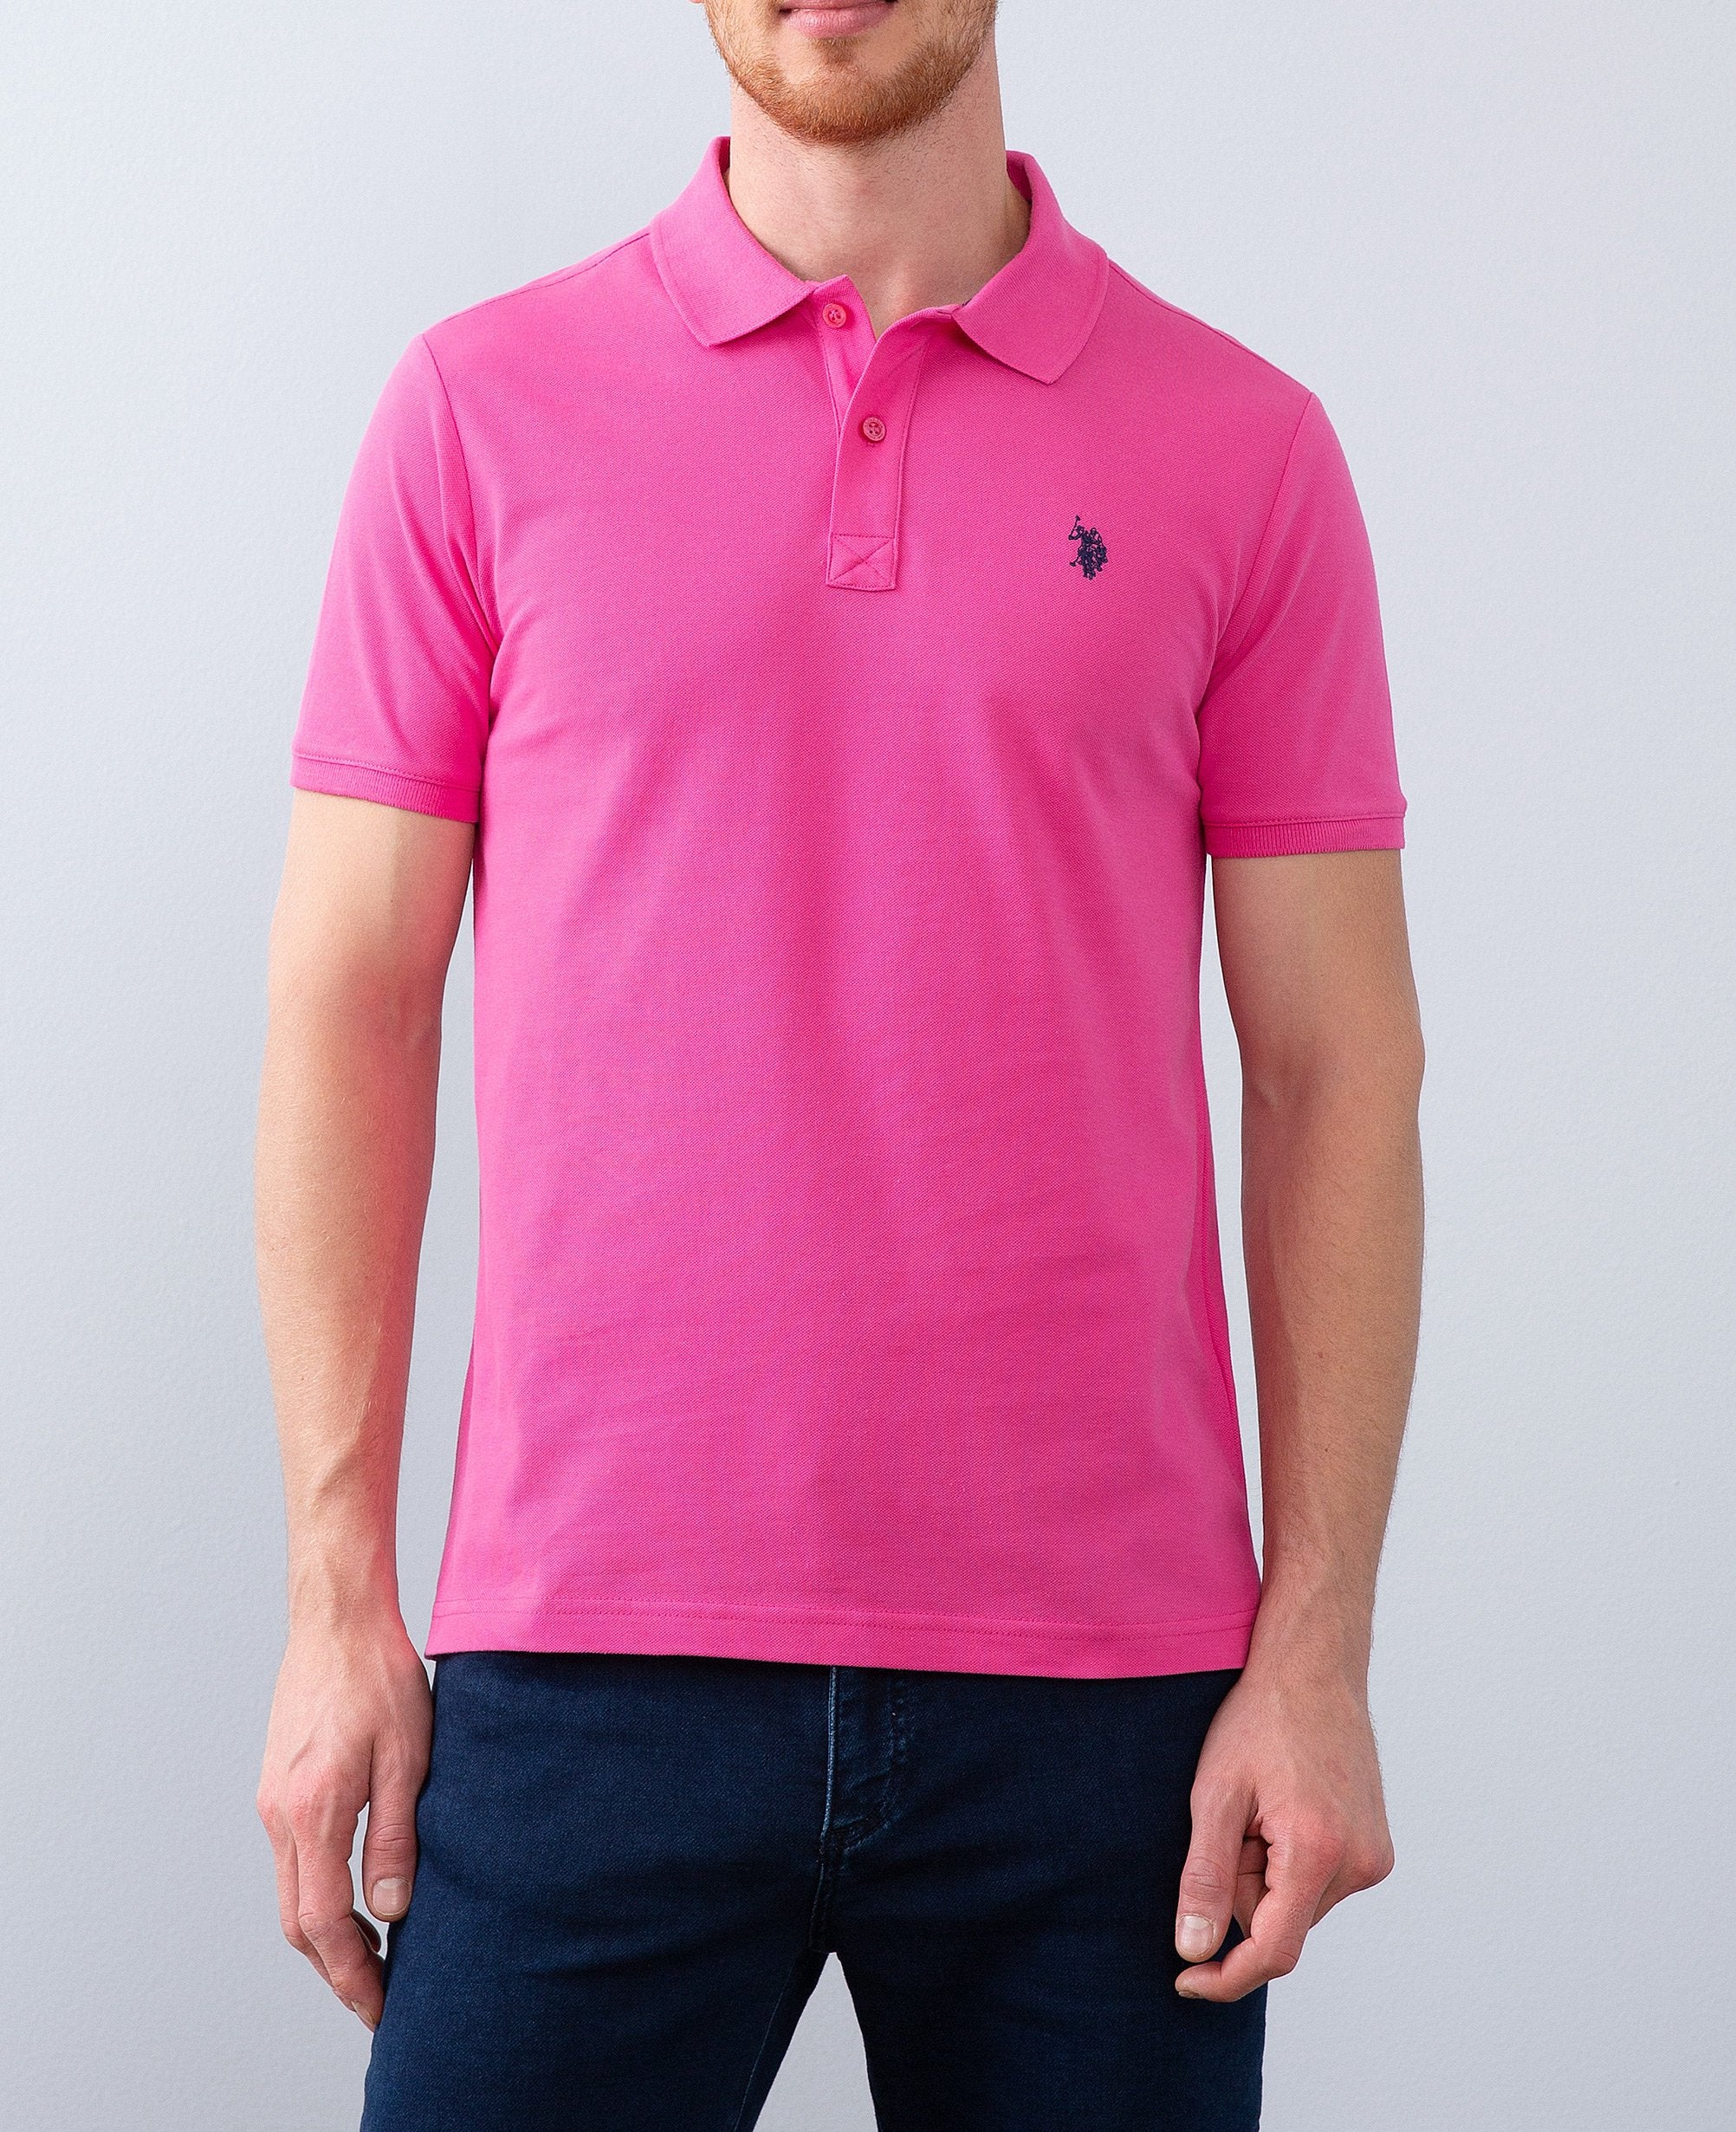 US Polo Assn. Men Polo Shirts Pink - Oshoplin